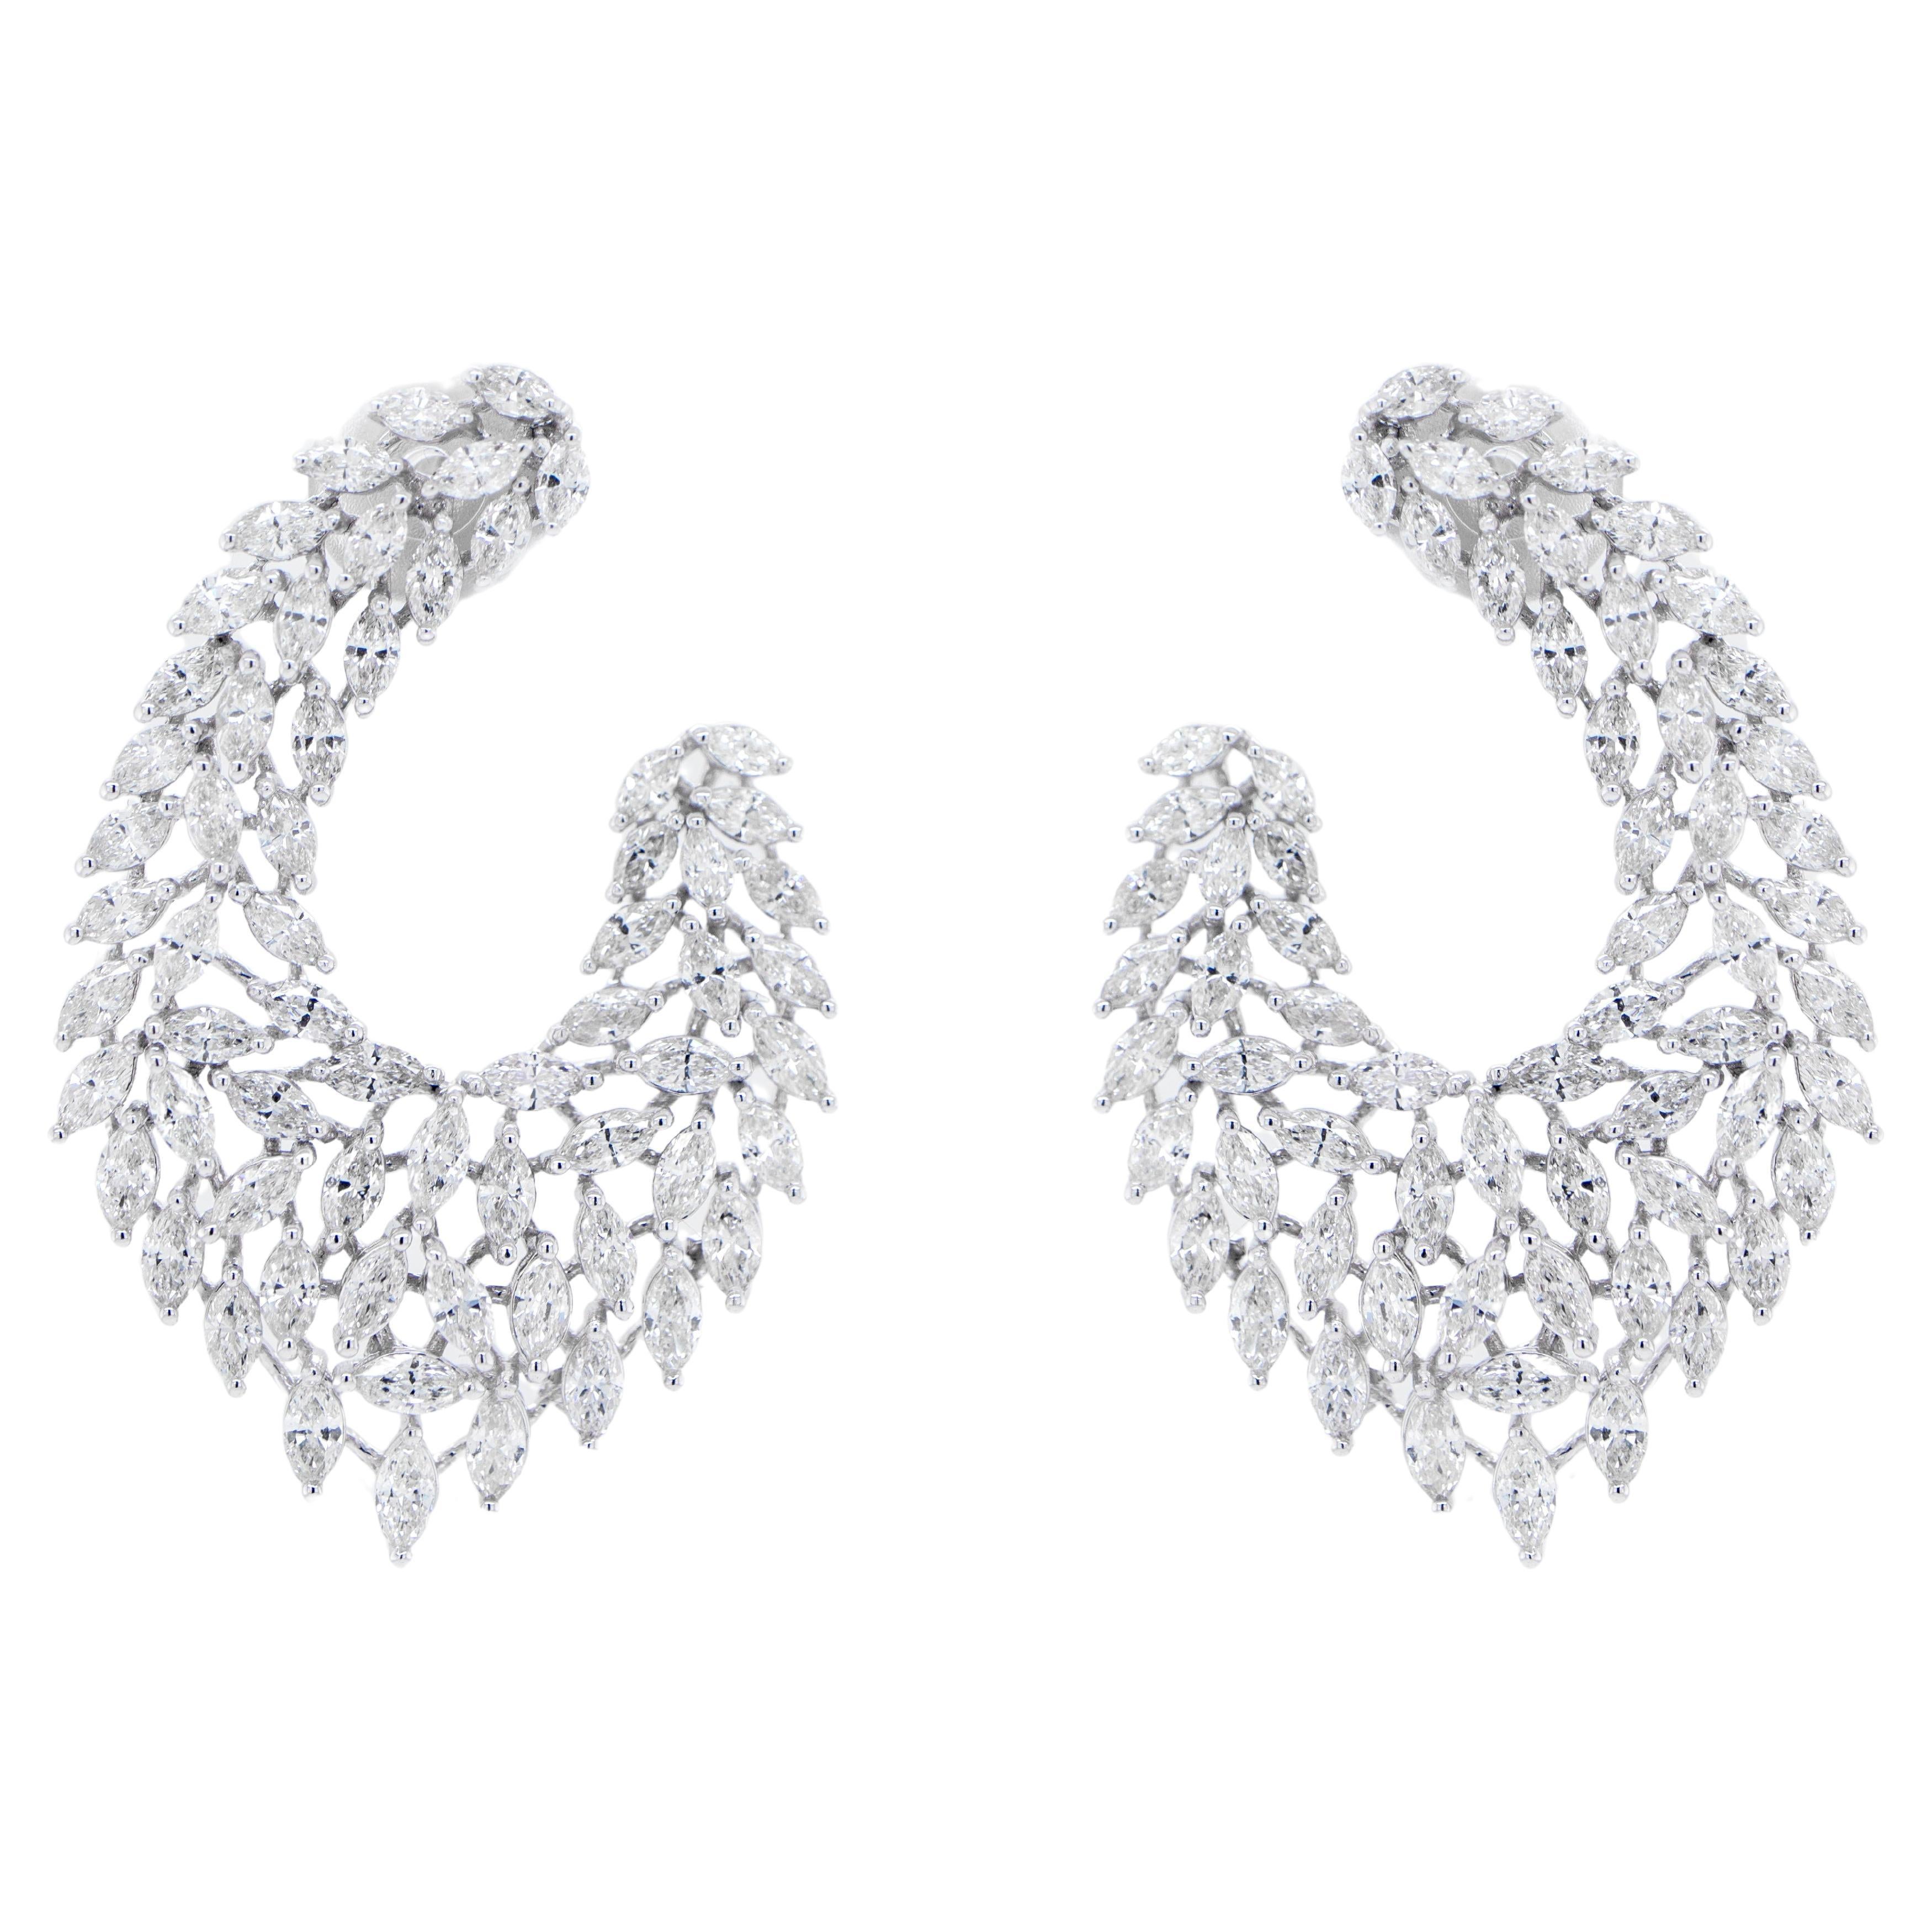 Diamond Chandelier Earrings 5.13 Carats 18K White Gold